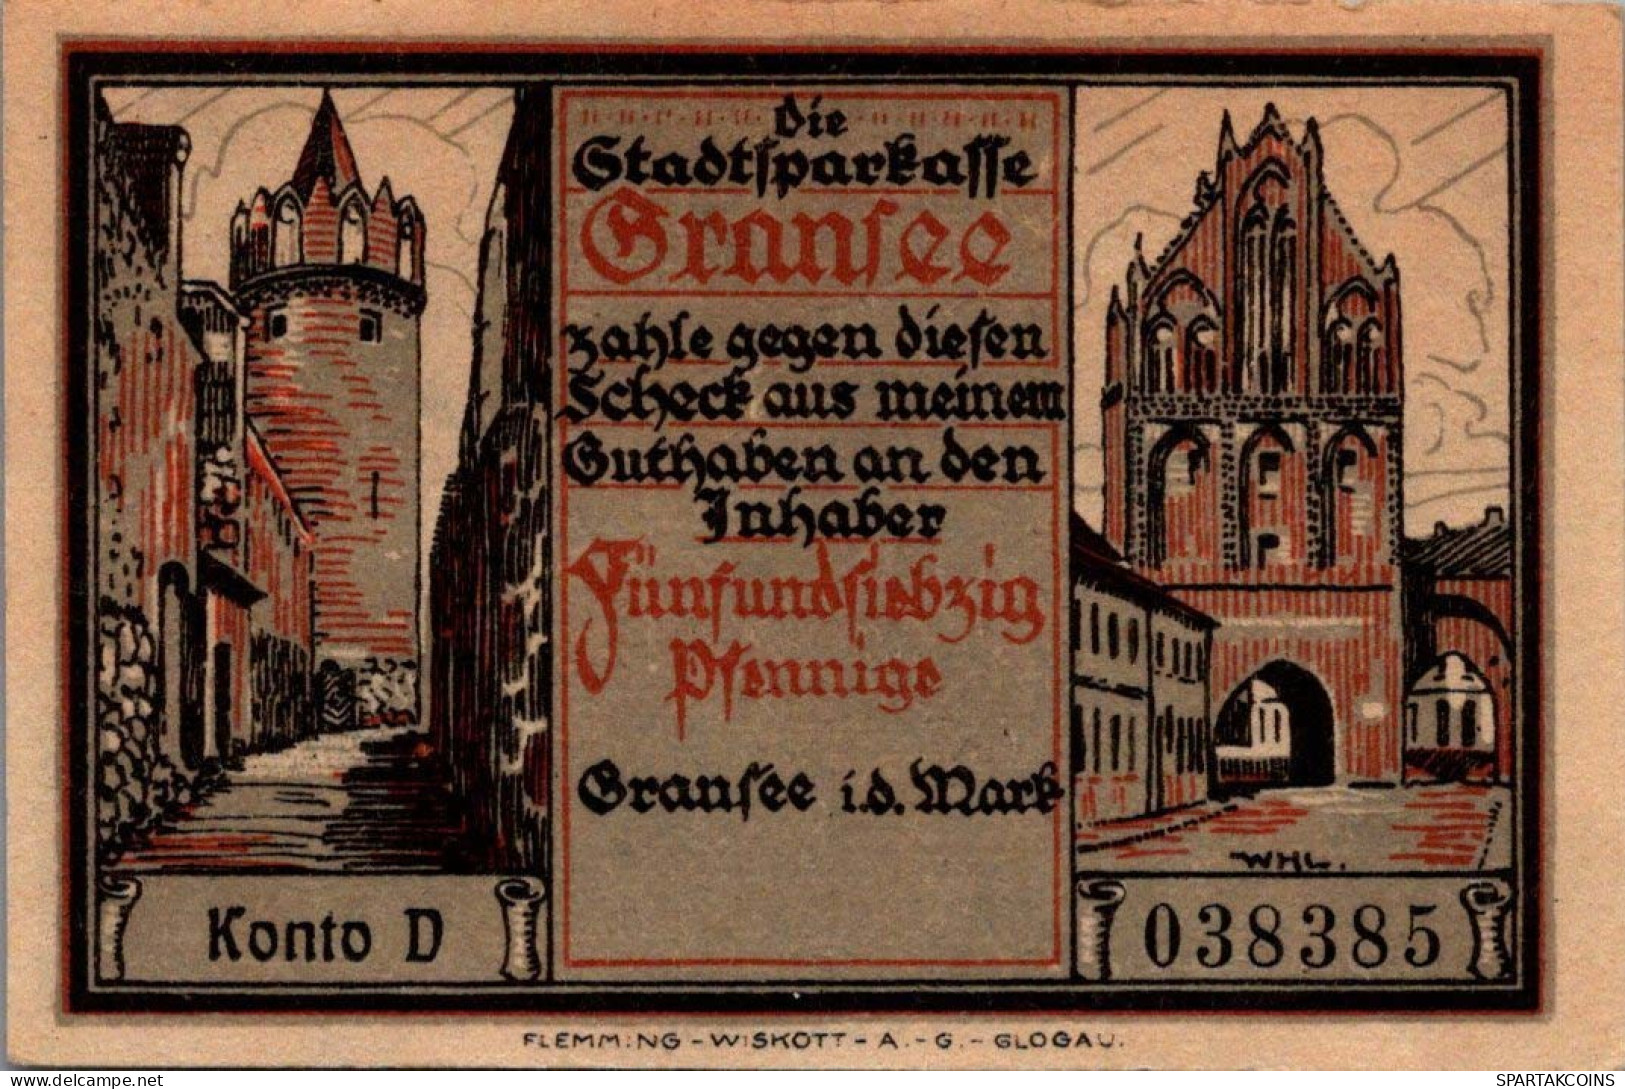 75 PFENNIG 1921 Stadt GRANSEE Brandenburg UNC DEUTSCHLAND Notgeld #PD017 - [11] Emissions Locales